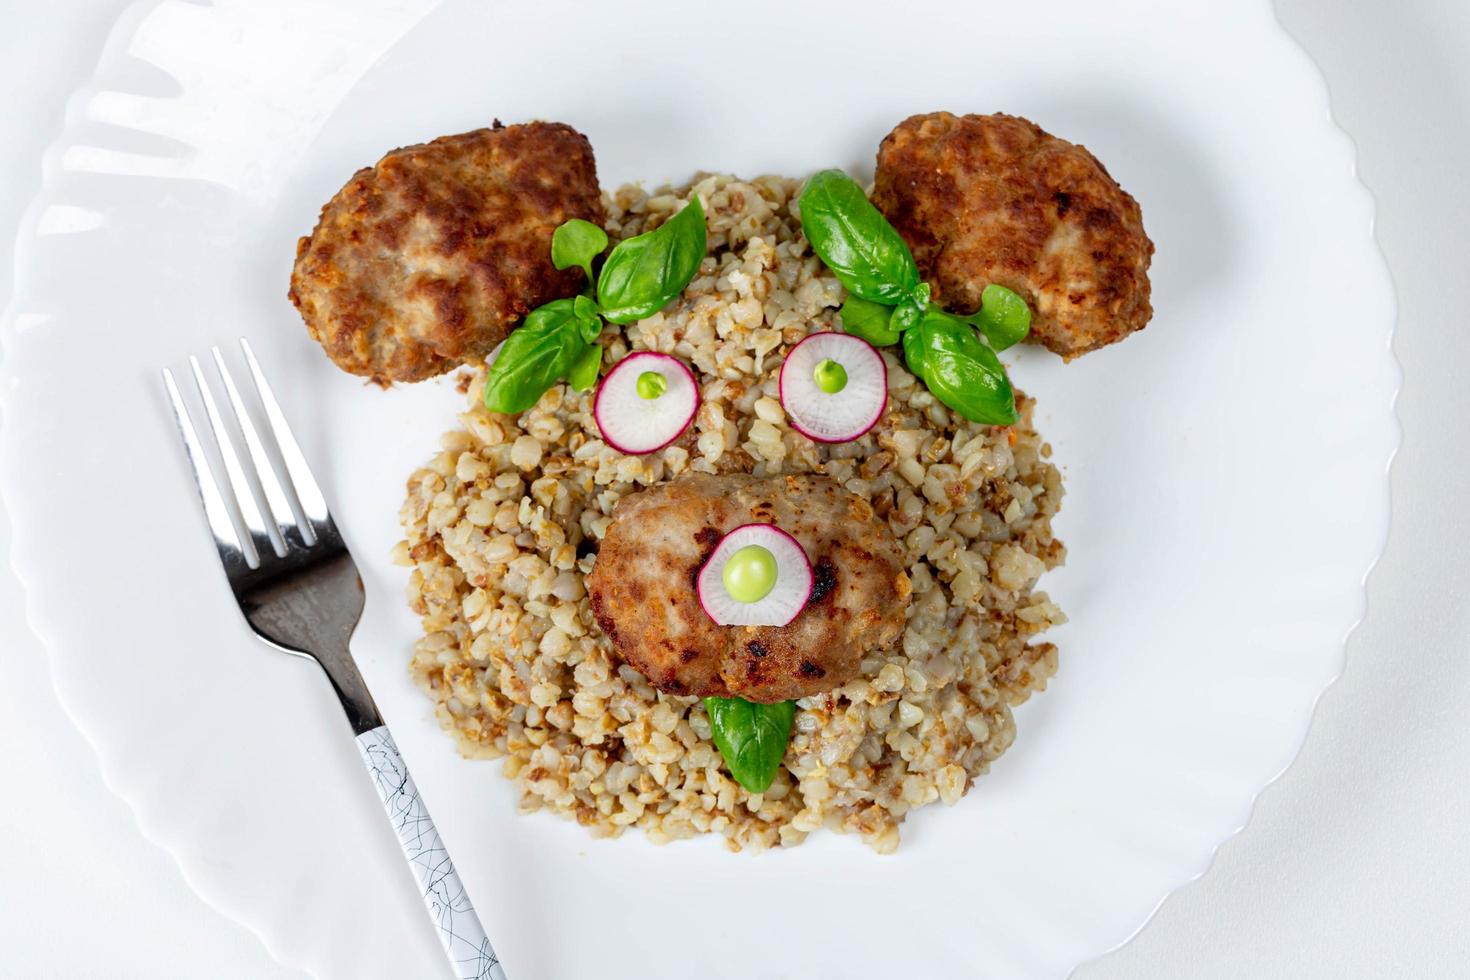 vue de dessus du visage d'un ours fait de bouillie de sarrasin, boulettes de viande, légumes et basilic sur une assiette blanche photo